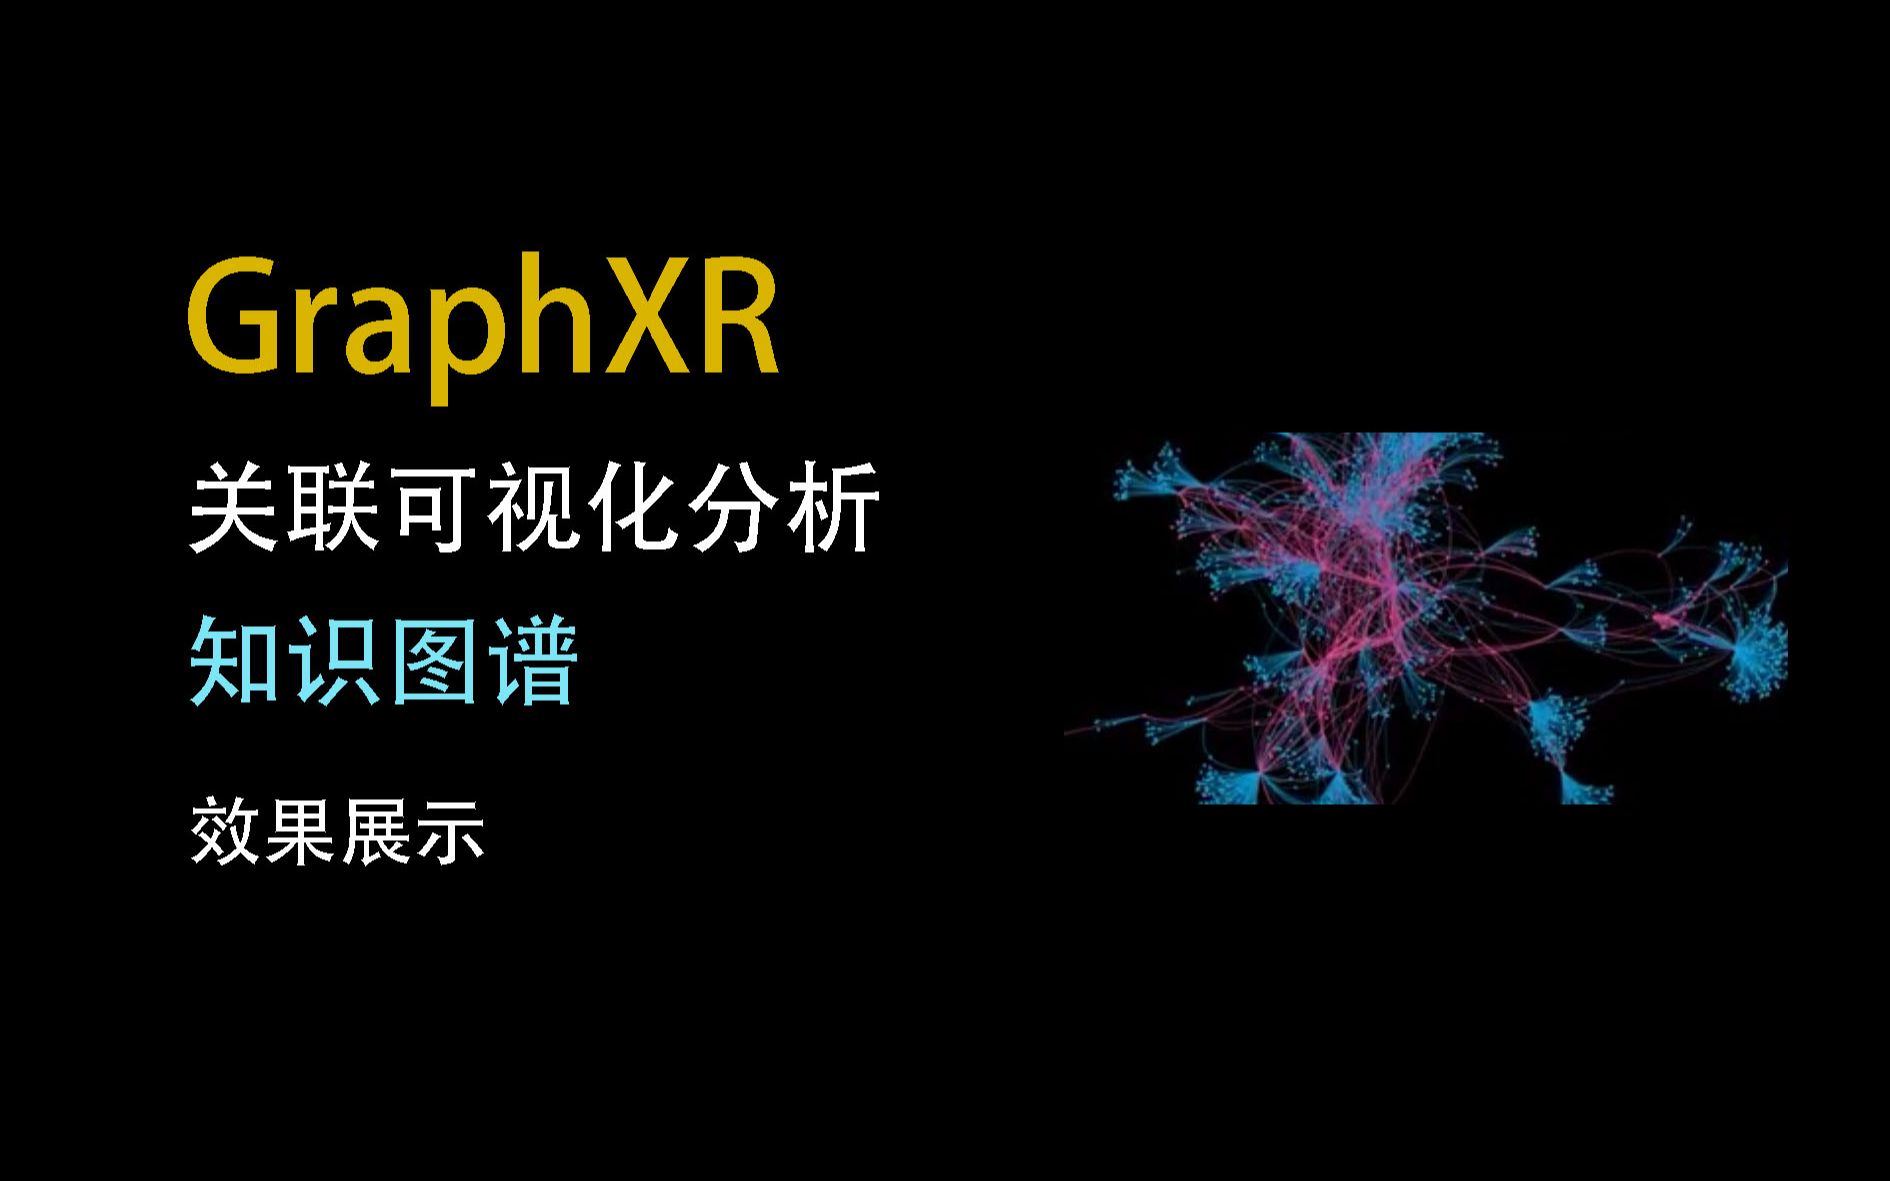 GraphXR关联可视化分析-知识图谱效果展示